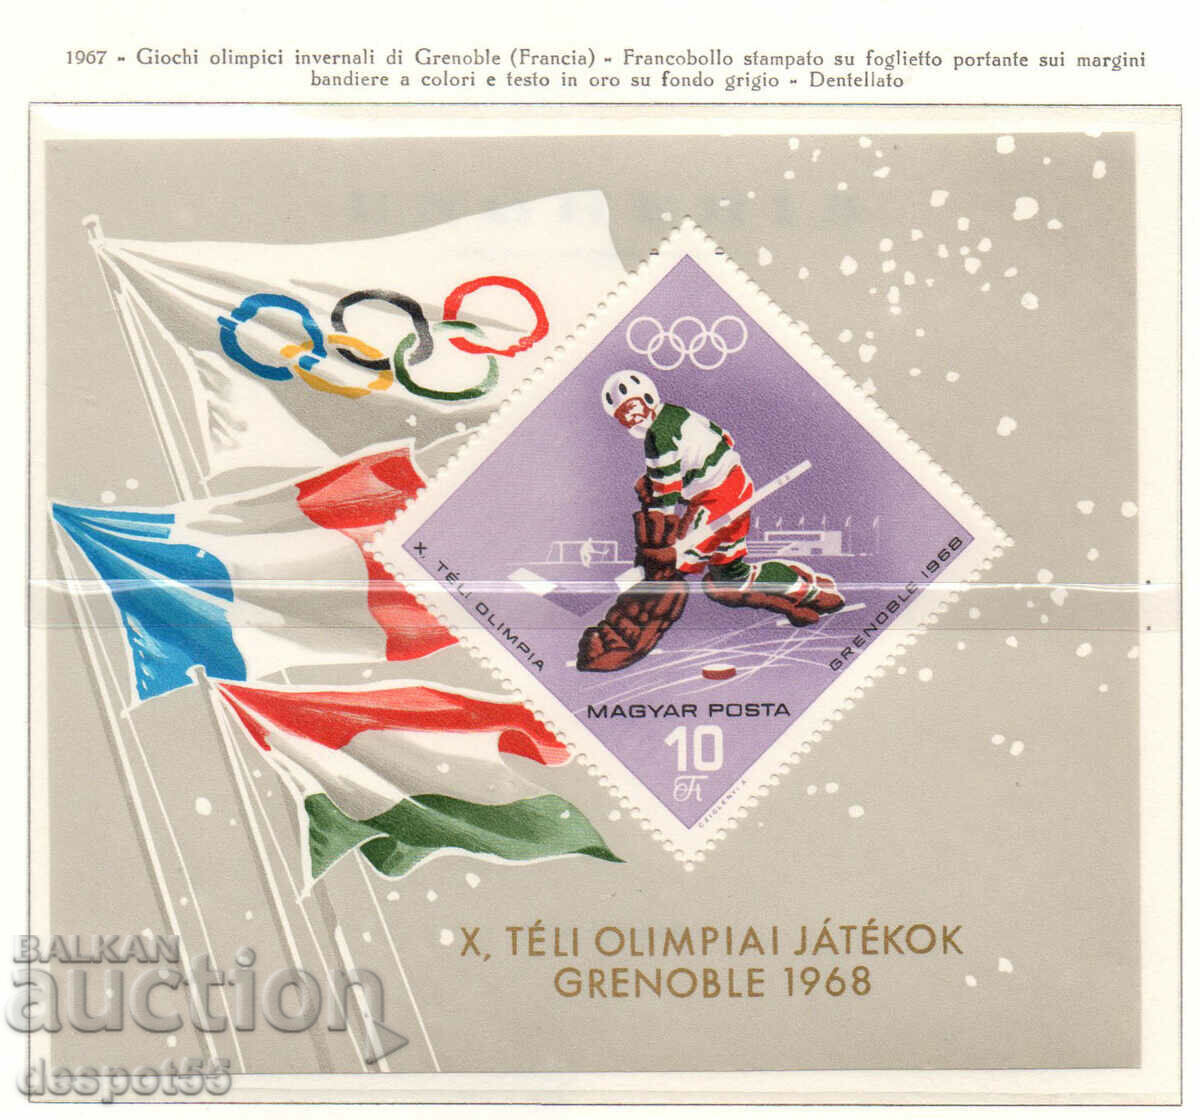 1967 Ουγγαρία. Χειμερινοί Ολυμπιακοί Αγώνες - Γκρενόμπλ, Γαλλία. ΟΙΚΟΔΟΜΙΚΟ ΤΕΤΡΑΓΩΝΟ